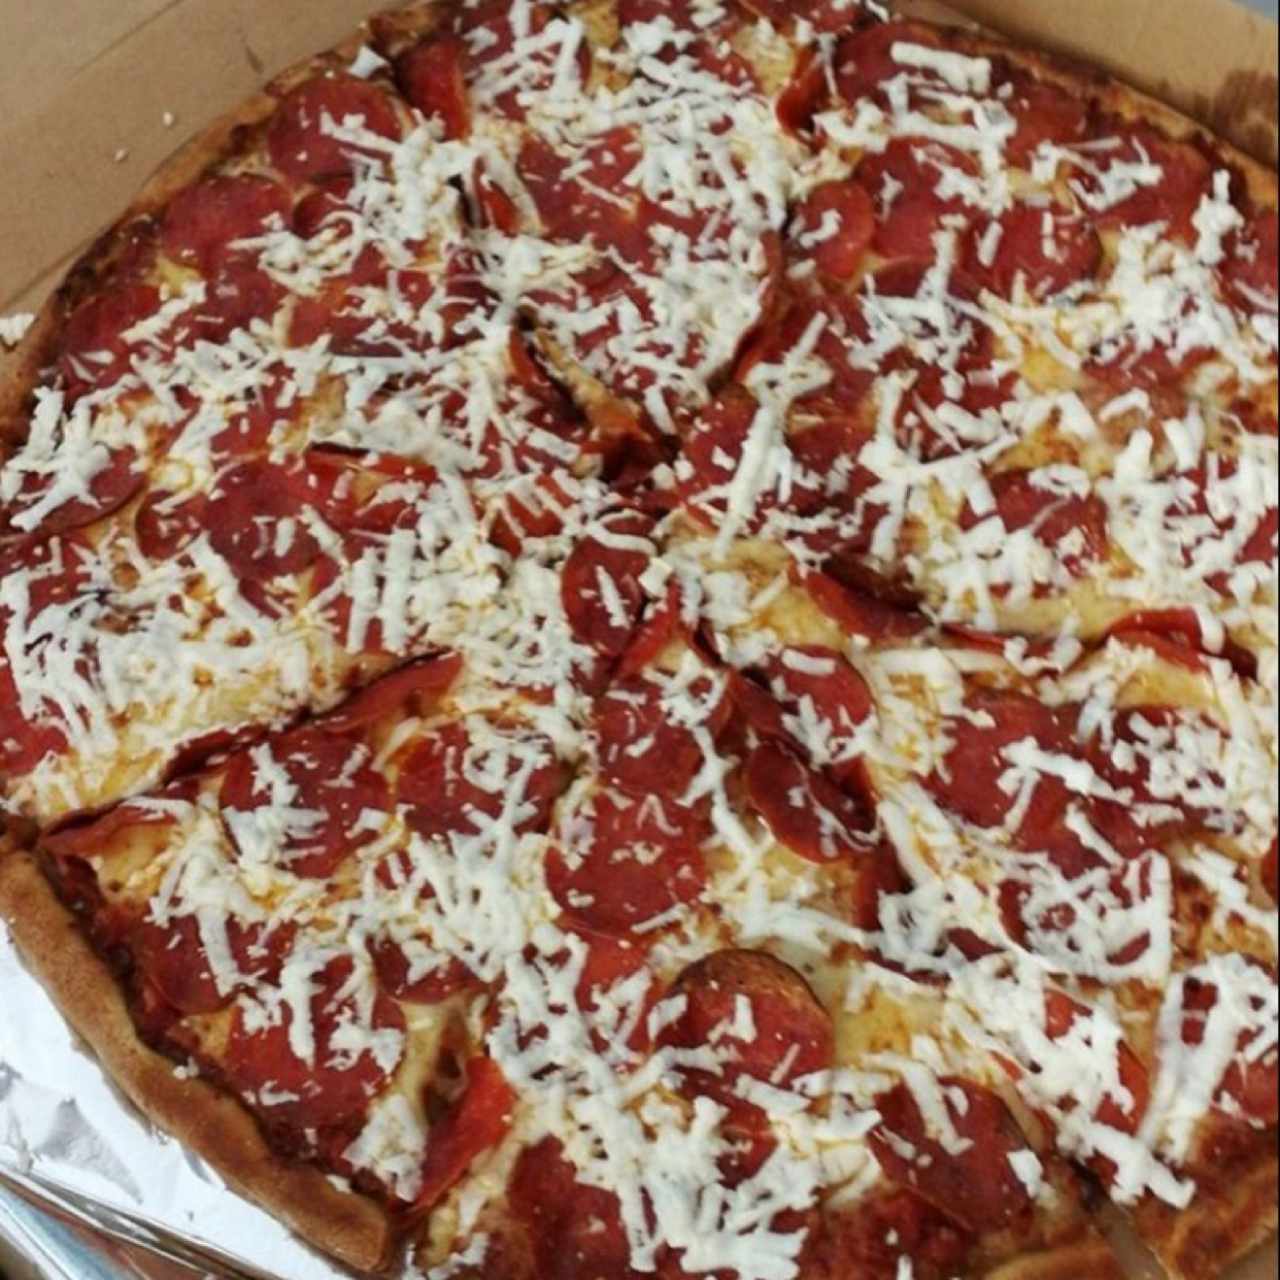 Pizza de pepperoni con queso feta al salir